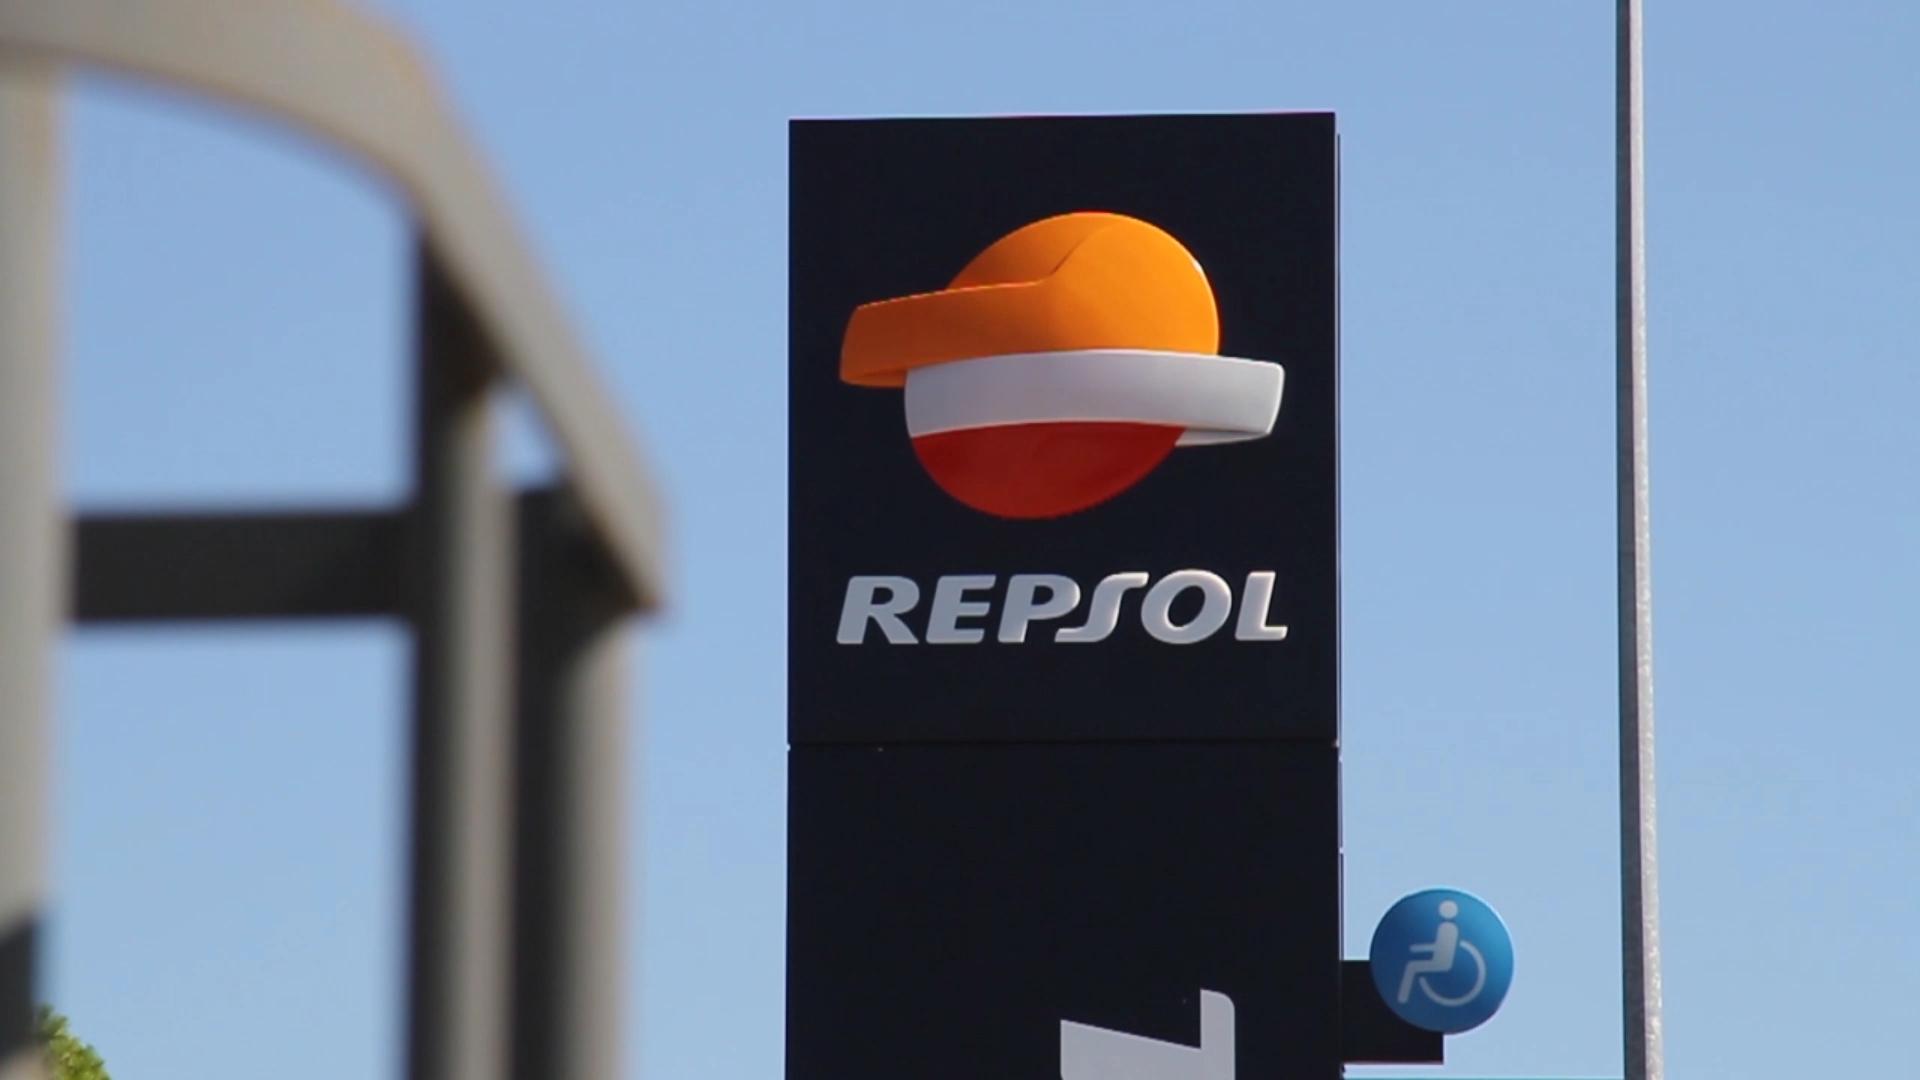 Repsol entra no biometano com a compra de fatia de 40% na Genia Bioenergy; veja que outras petroleiras já fincaram os pés no setor. Na imagem: Placa com a logo da Repsol nas instalações da petroleira espanhola (Foto: Divulgação)